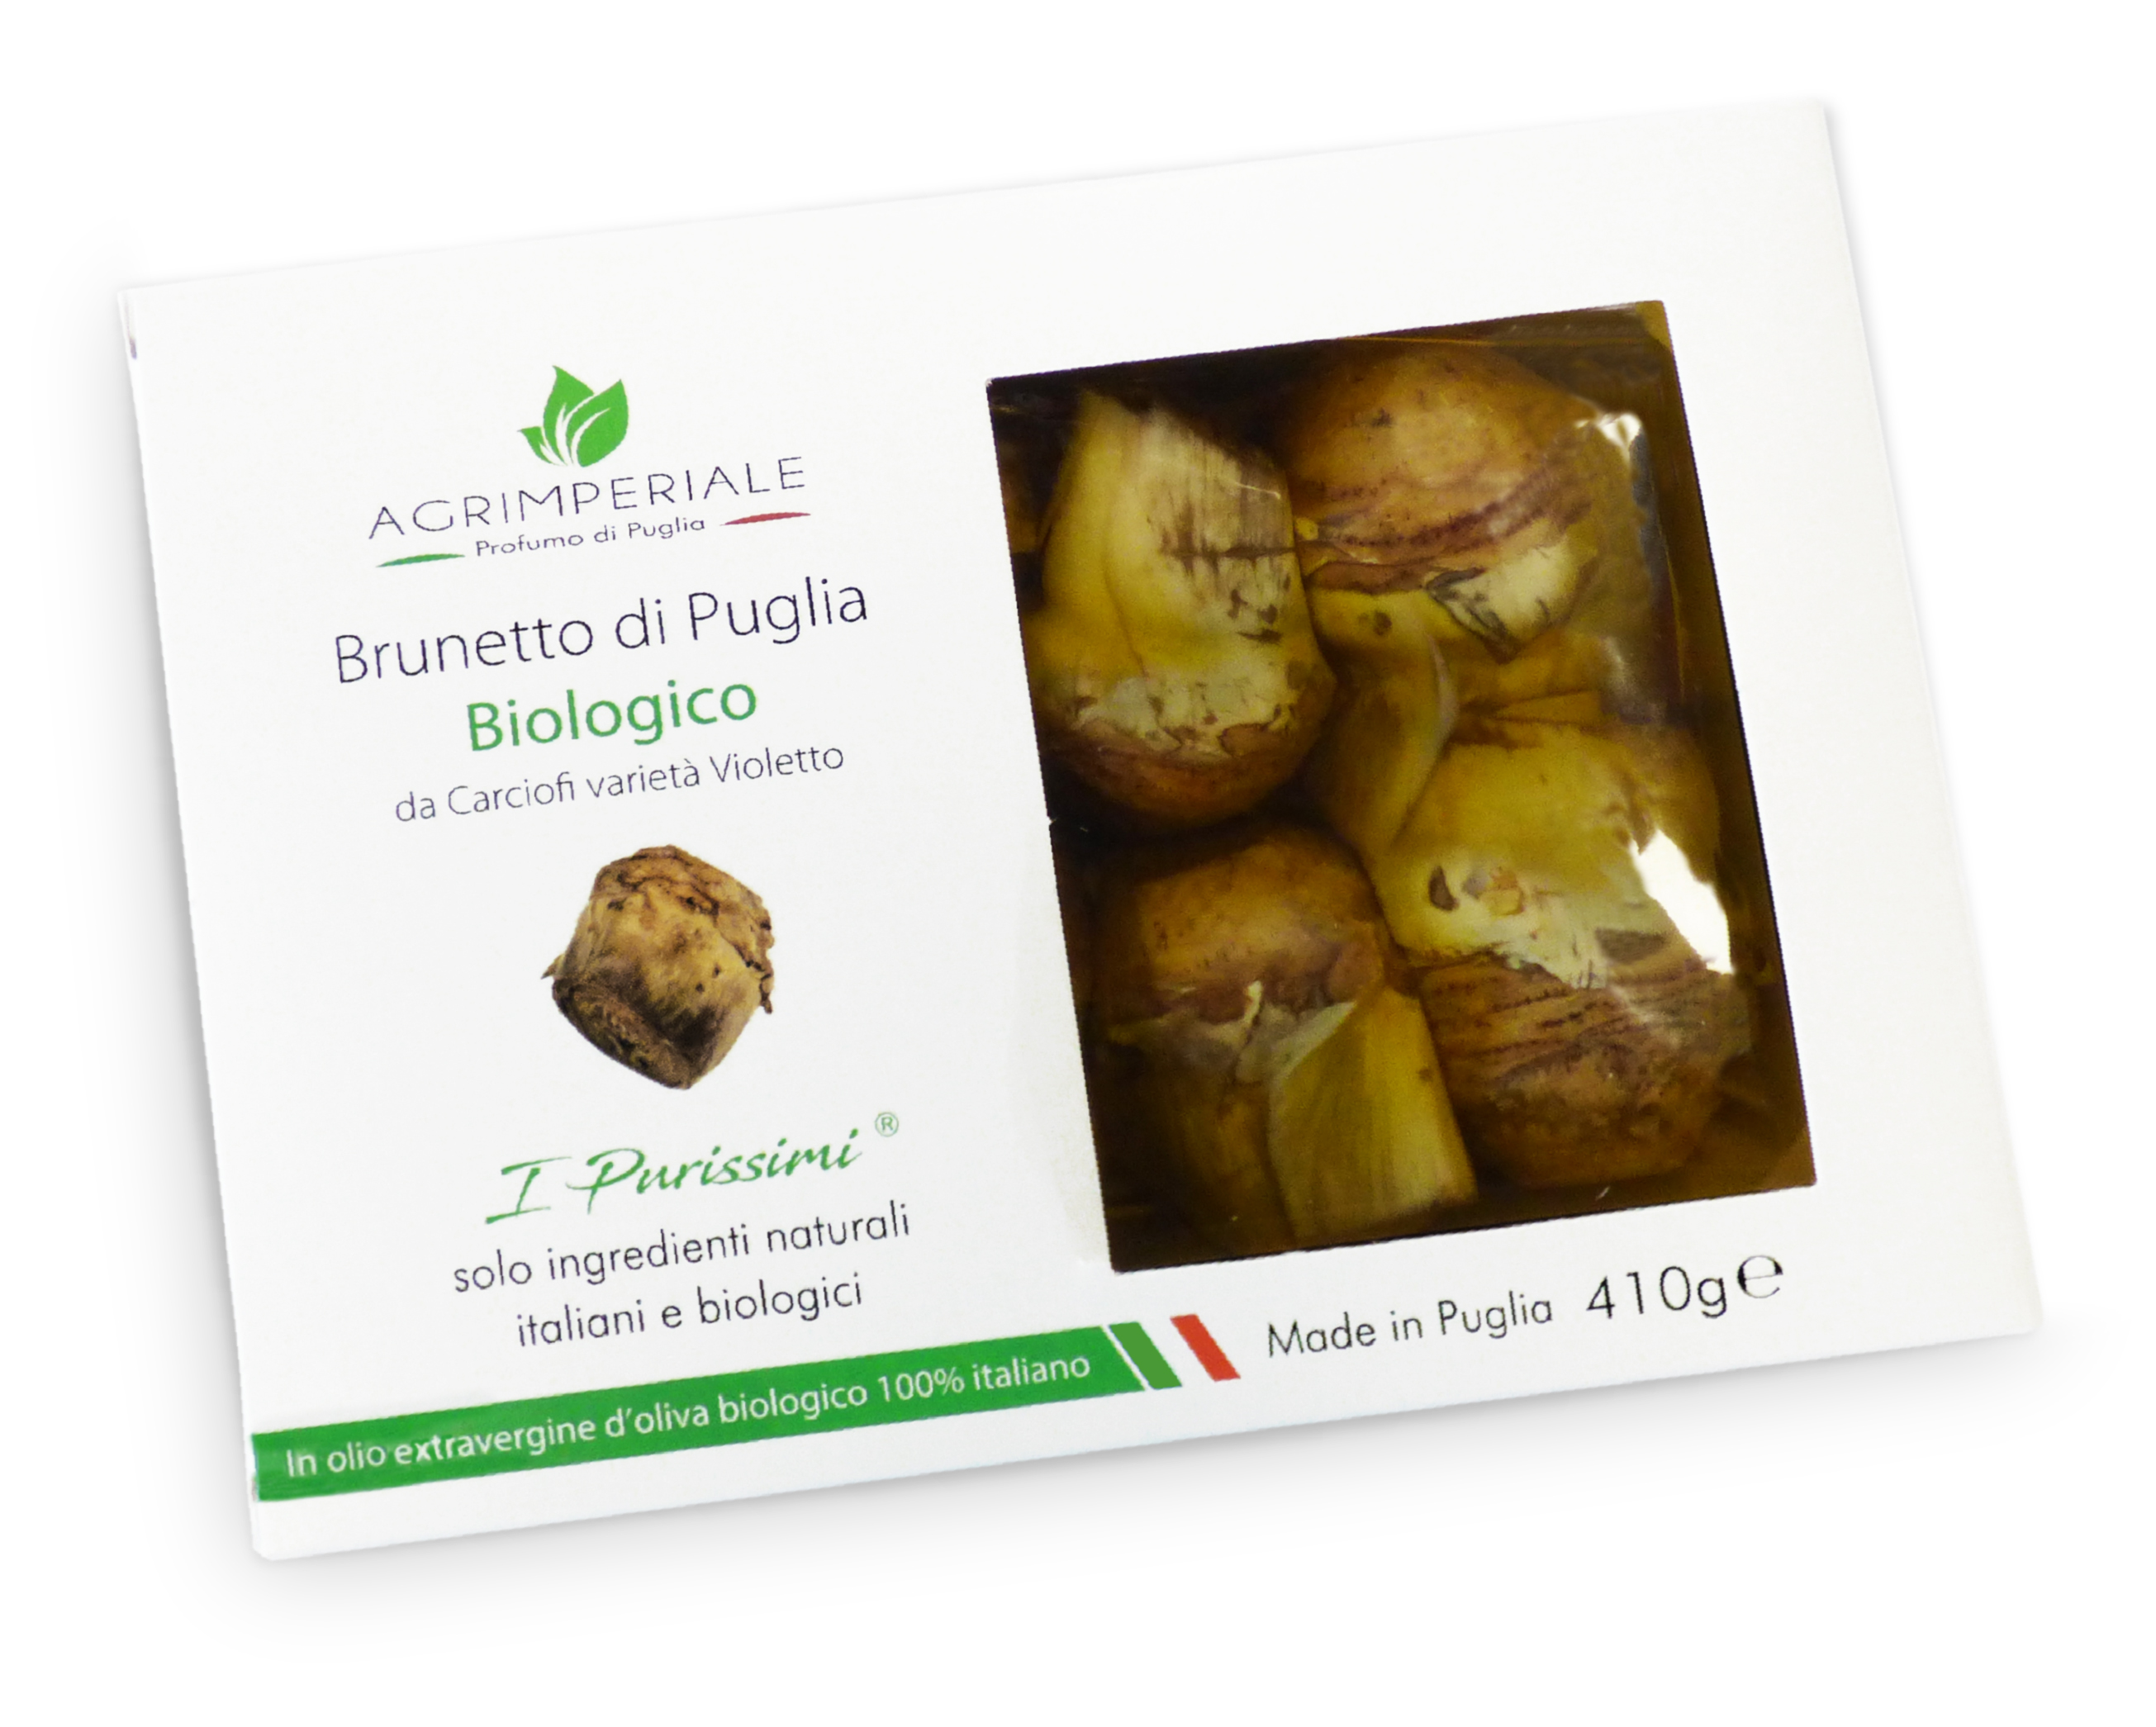 Carciofi Pugliesi Biologici "Brunetto di Puglia" - 410 g. Linea "I Purissimi"